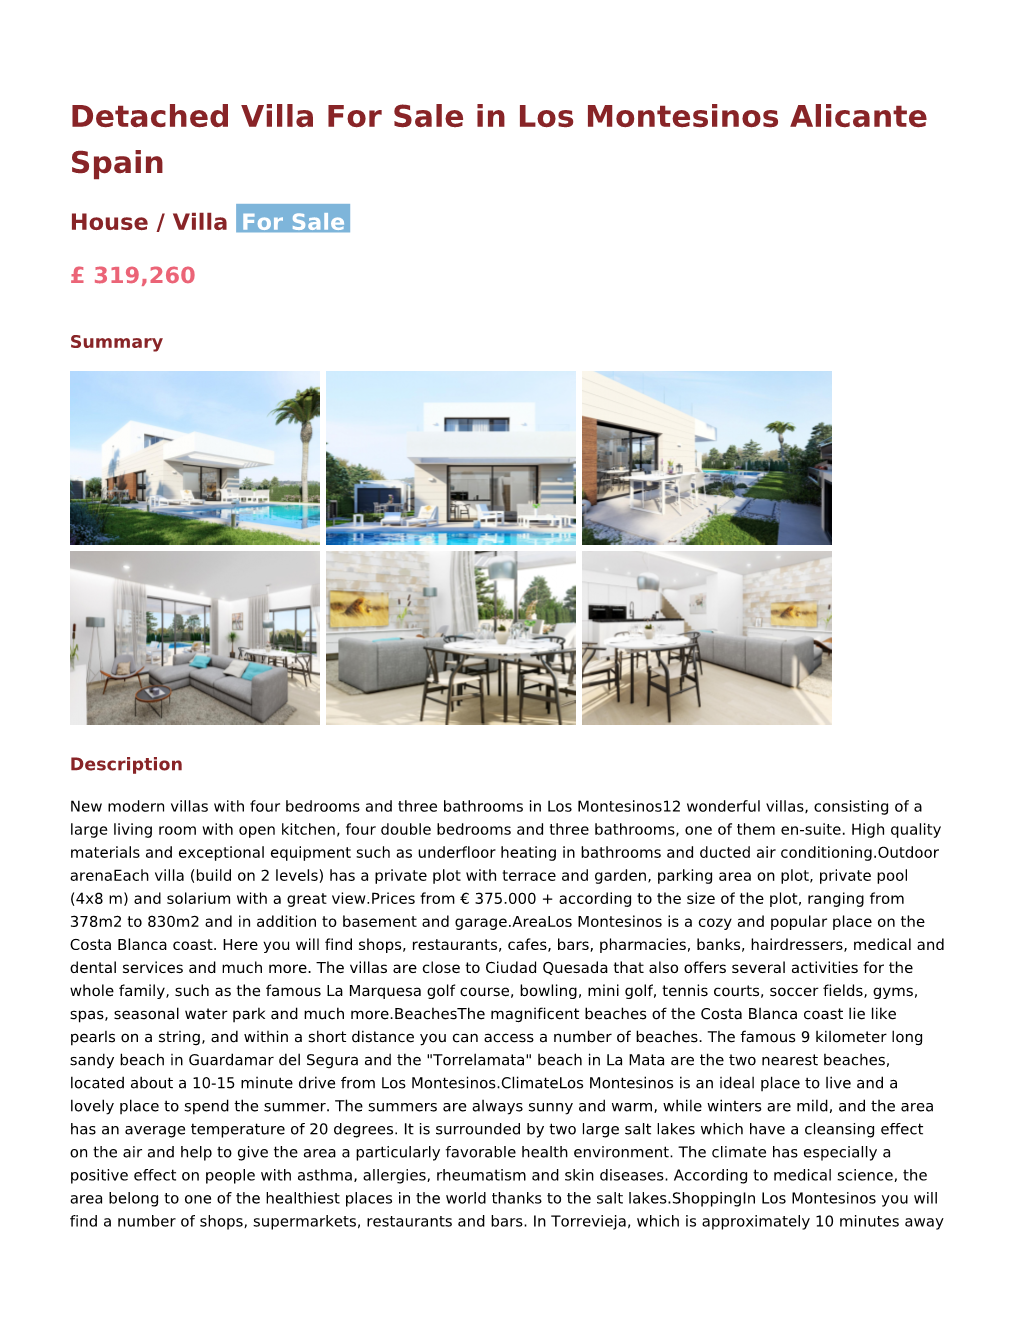 Detached Villa for Sale in Los Montesinos Alicante Spain